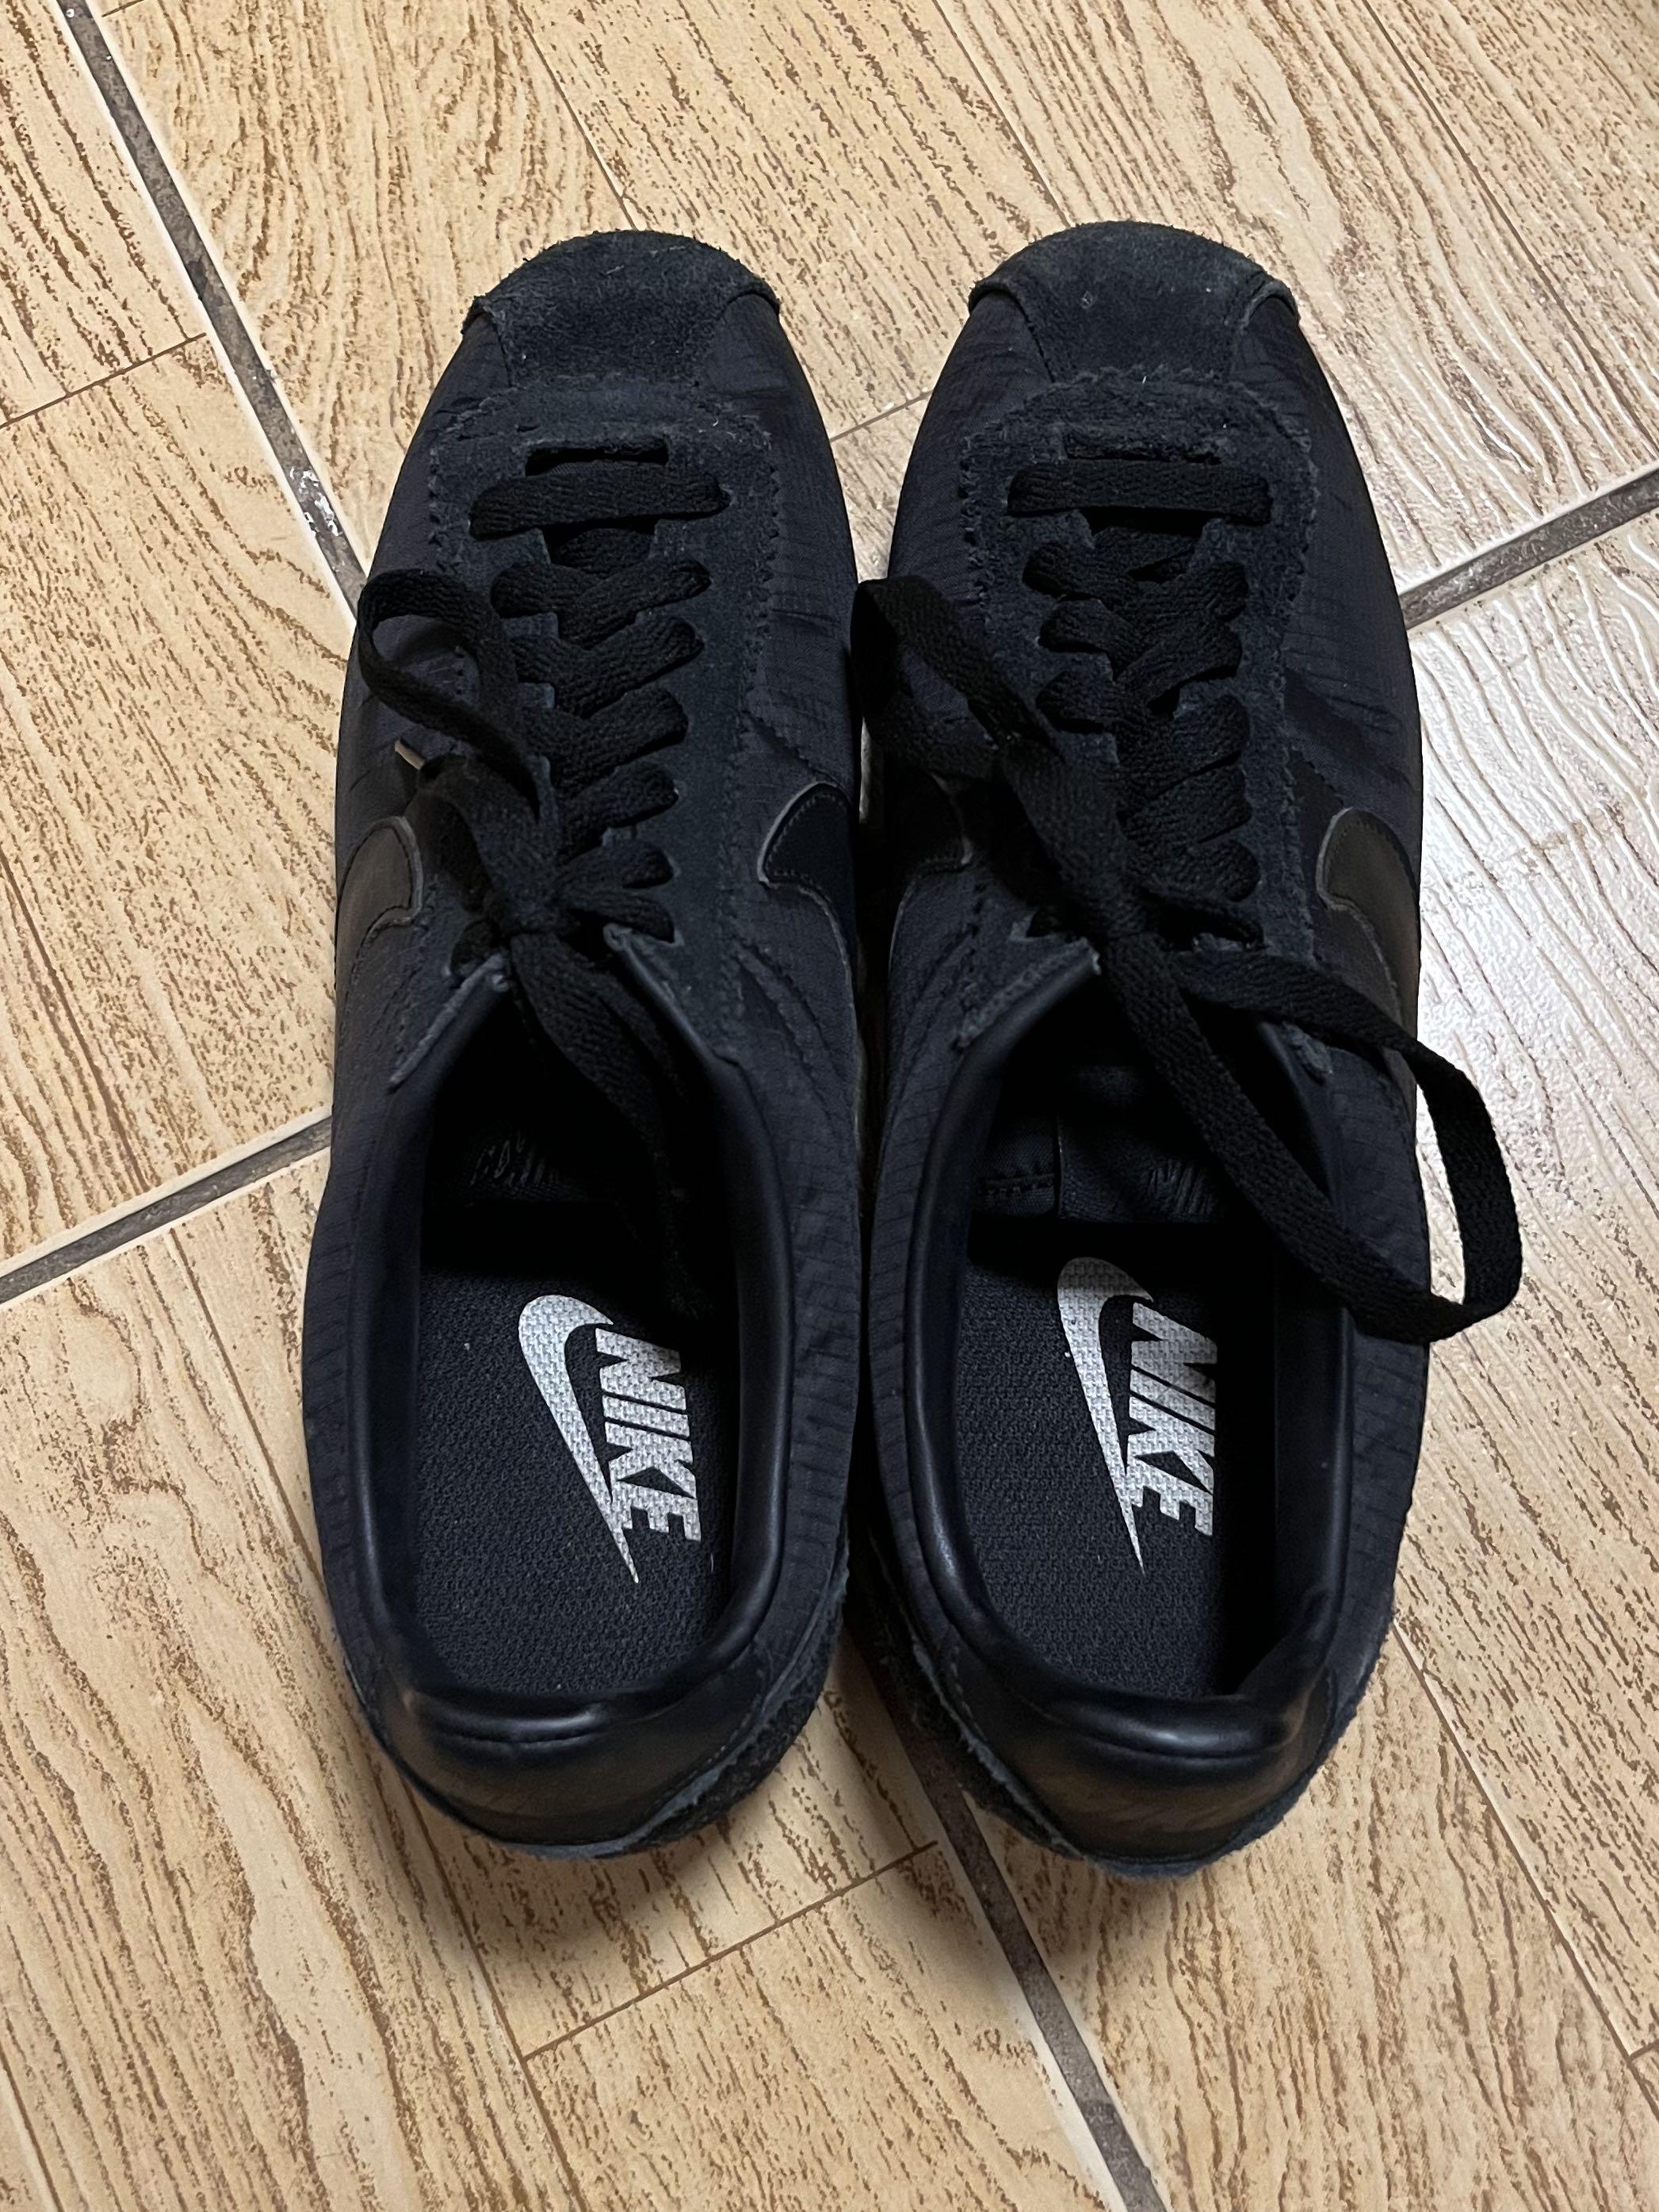 [Nike] Cortez - triple black nylon shoes, Men's Fashion, Footwear ...